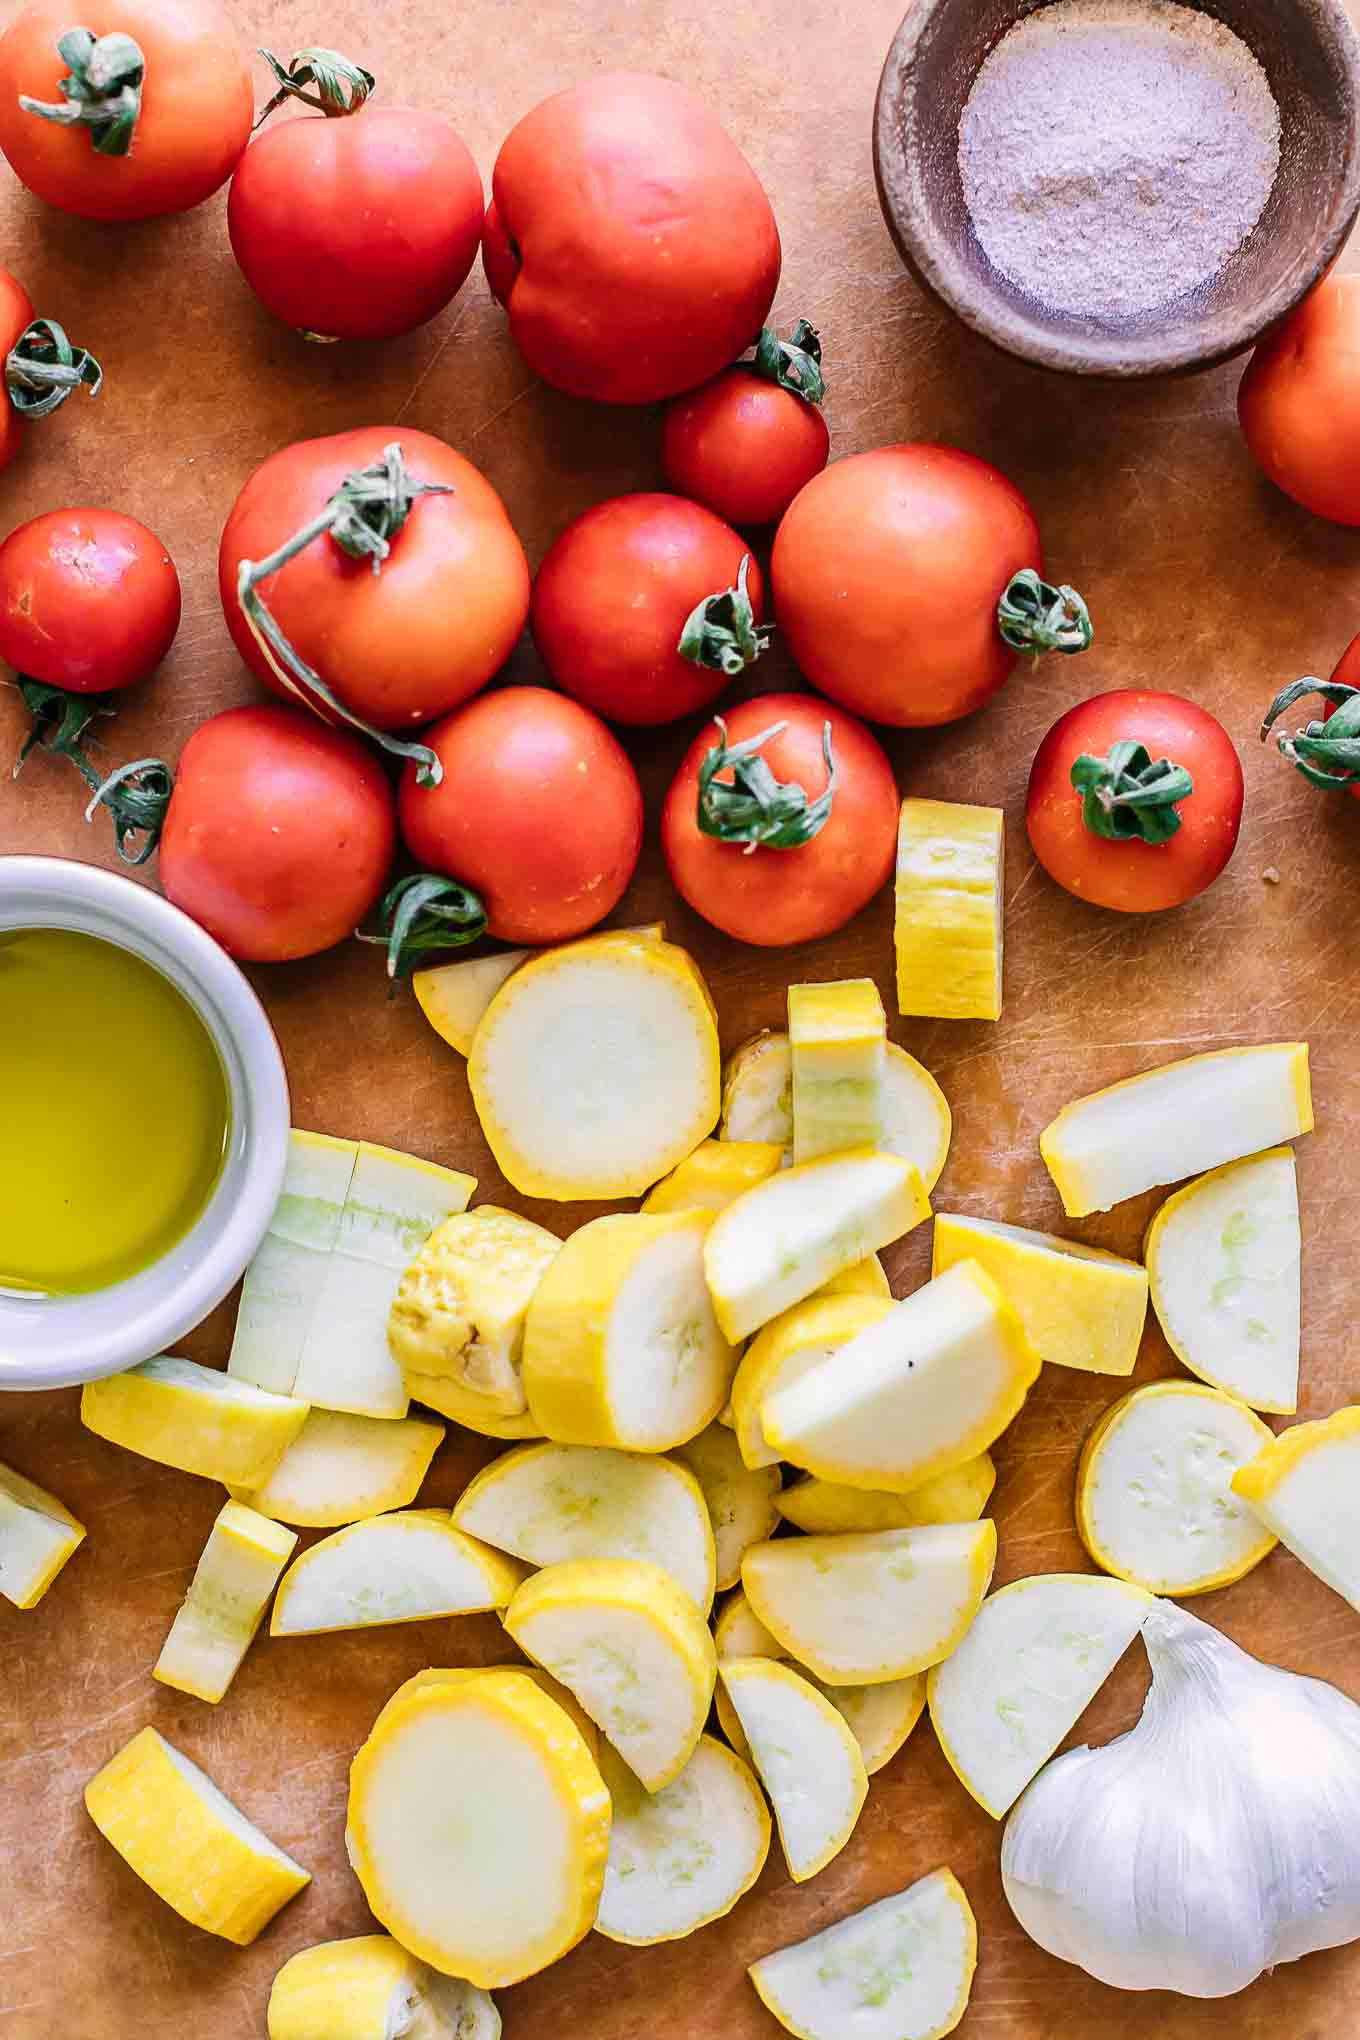 樱桃番茄和切成薄片的黄色夏季南瓜在木材切菜板上GydF4y2Ba